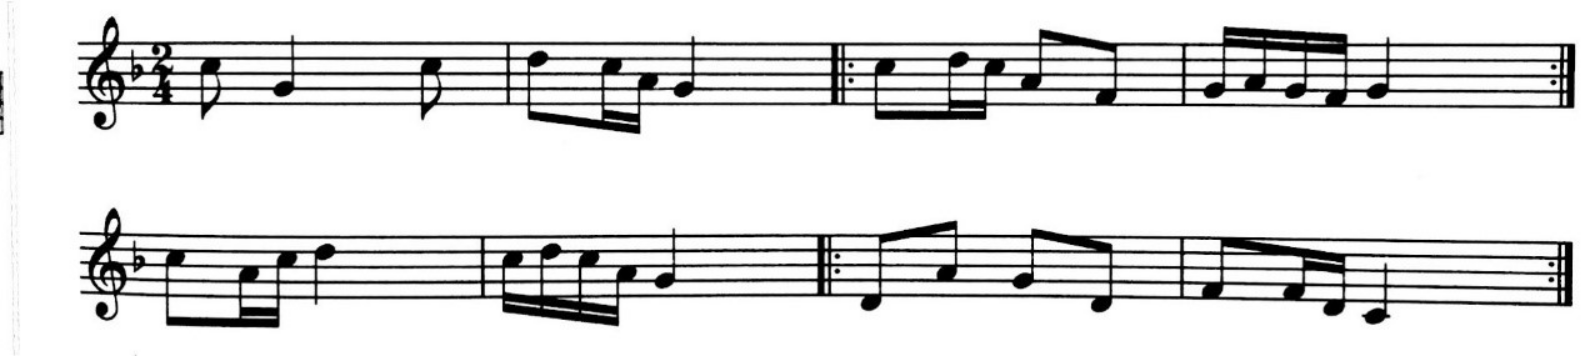 下列旋律的调式为（ ）。